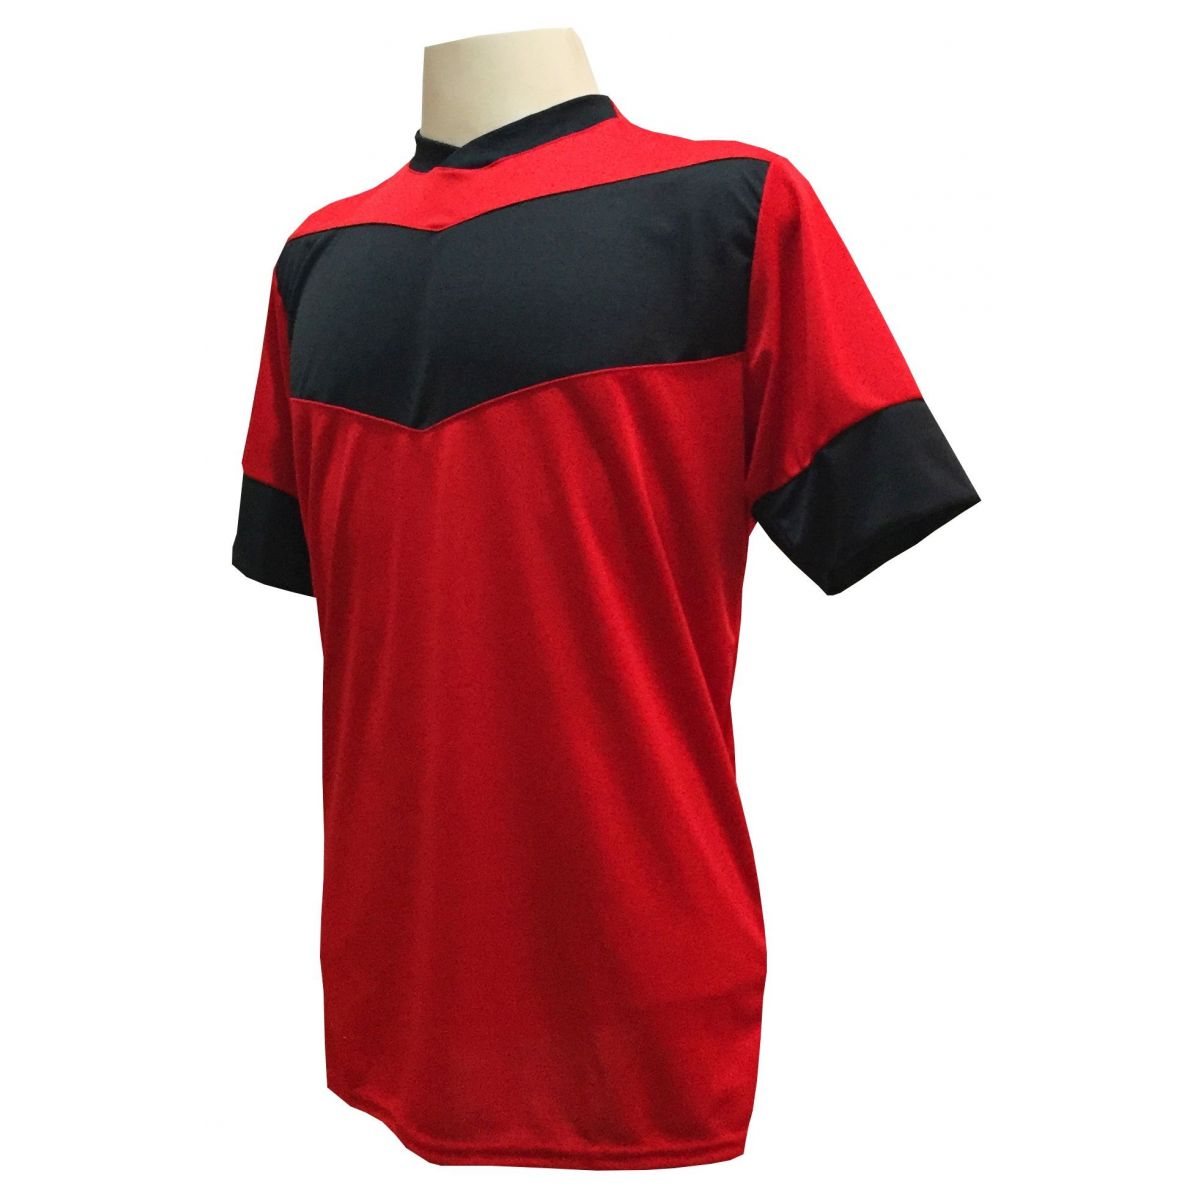 Uniforme Esportivo com 18 camisas modelo Columbus Vermelho/Preto + 18 calções modelo Madrid Preto + Brindes